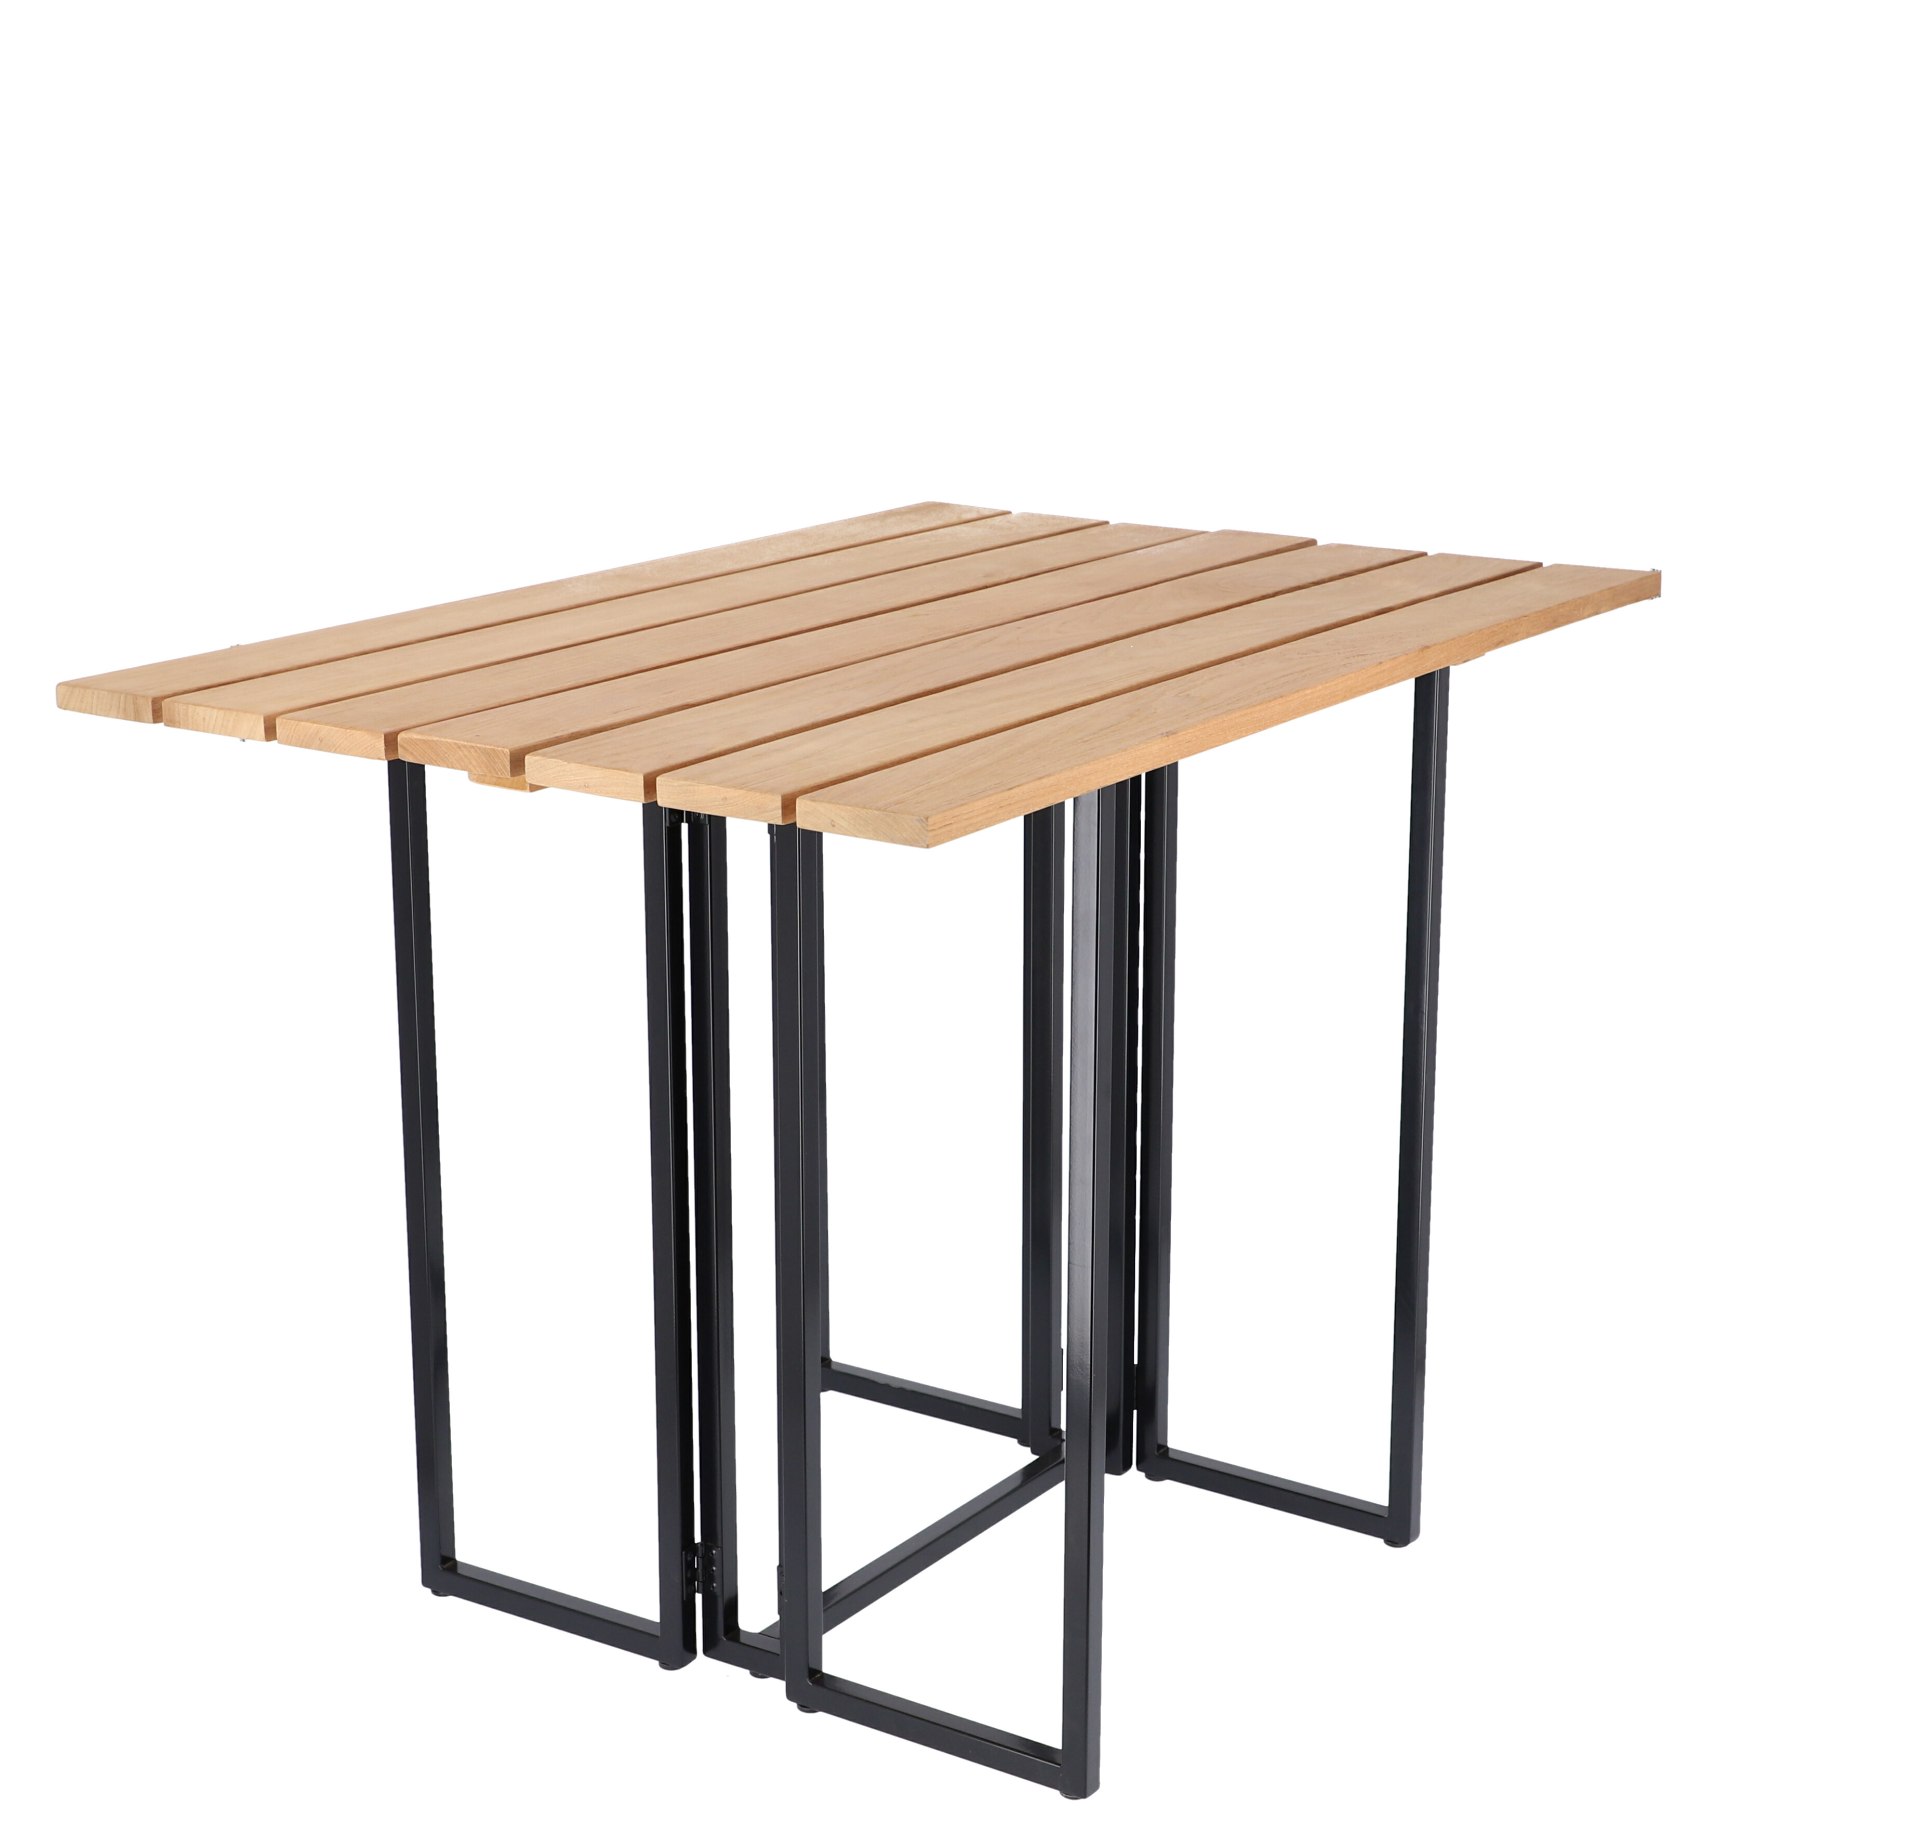 Der Klapptisch Time besitzt ein skandinavisches Design und wurde aus Teakholz gefertigt. Der Tisch hat verschieden Größen die nach belieben verändert werden können und wurde von der Marke Jan Kurtz designet.